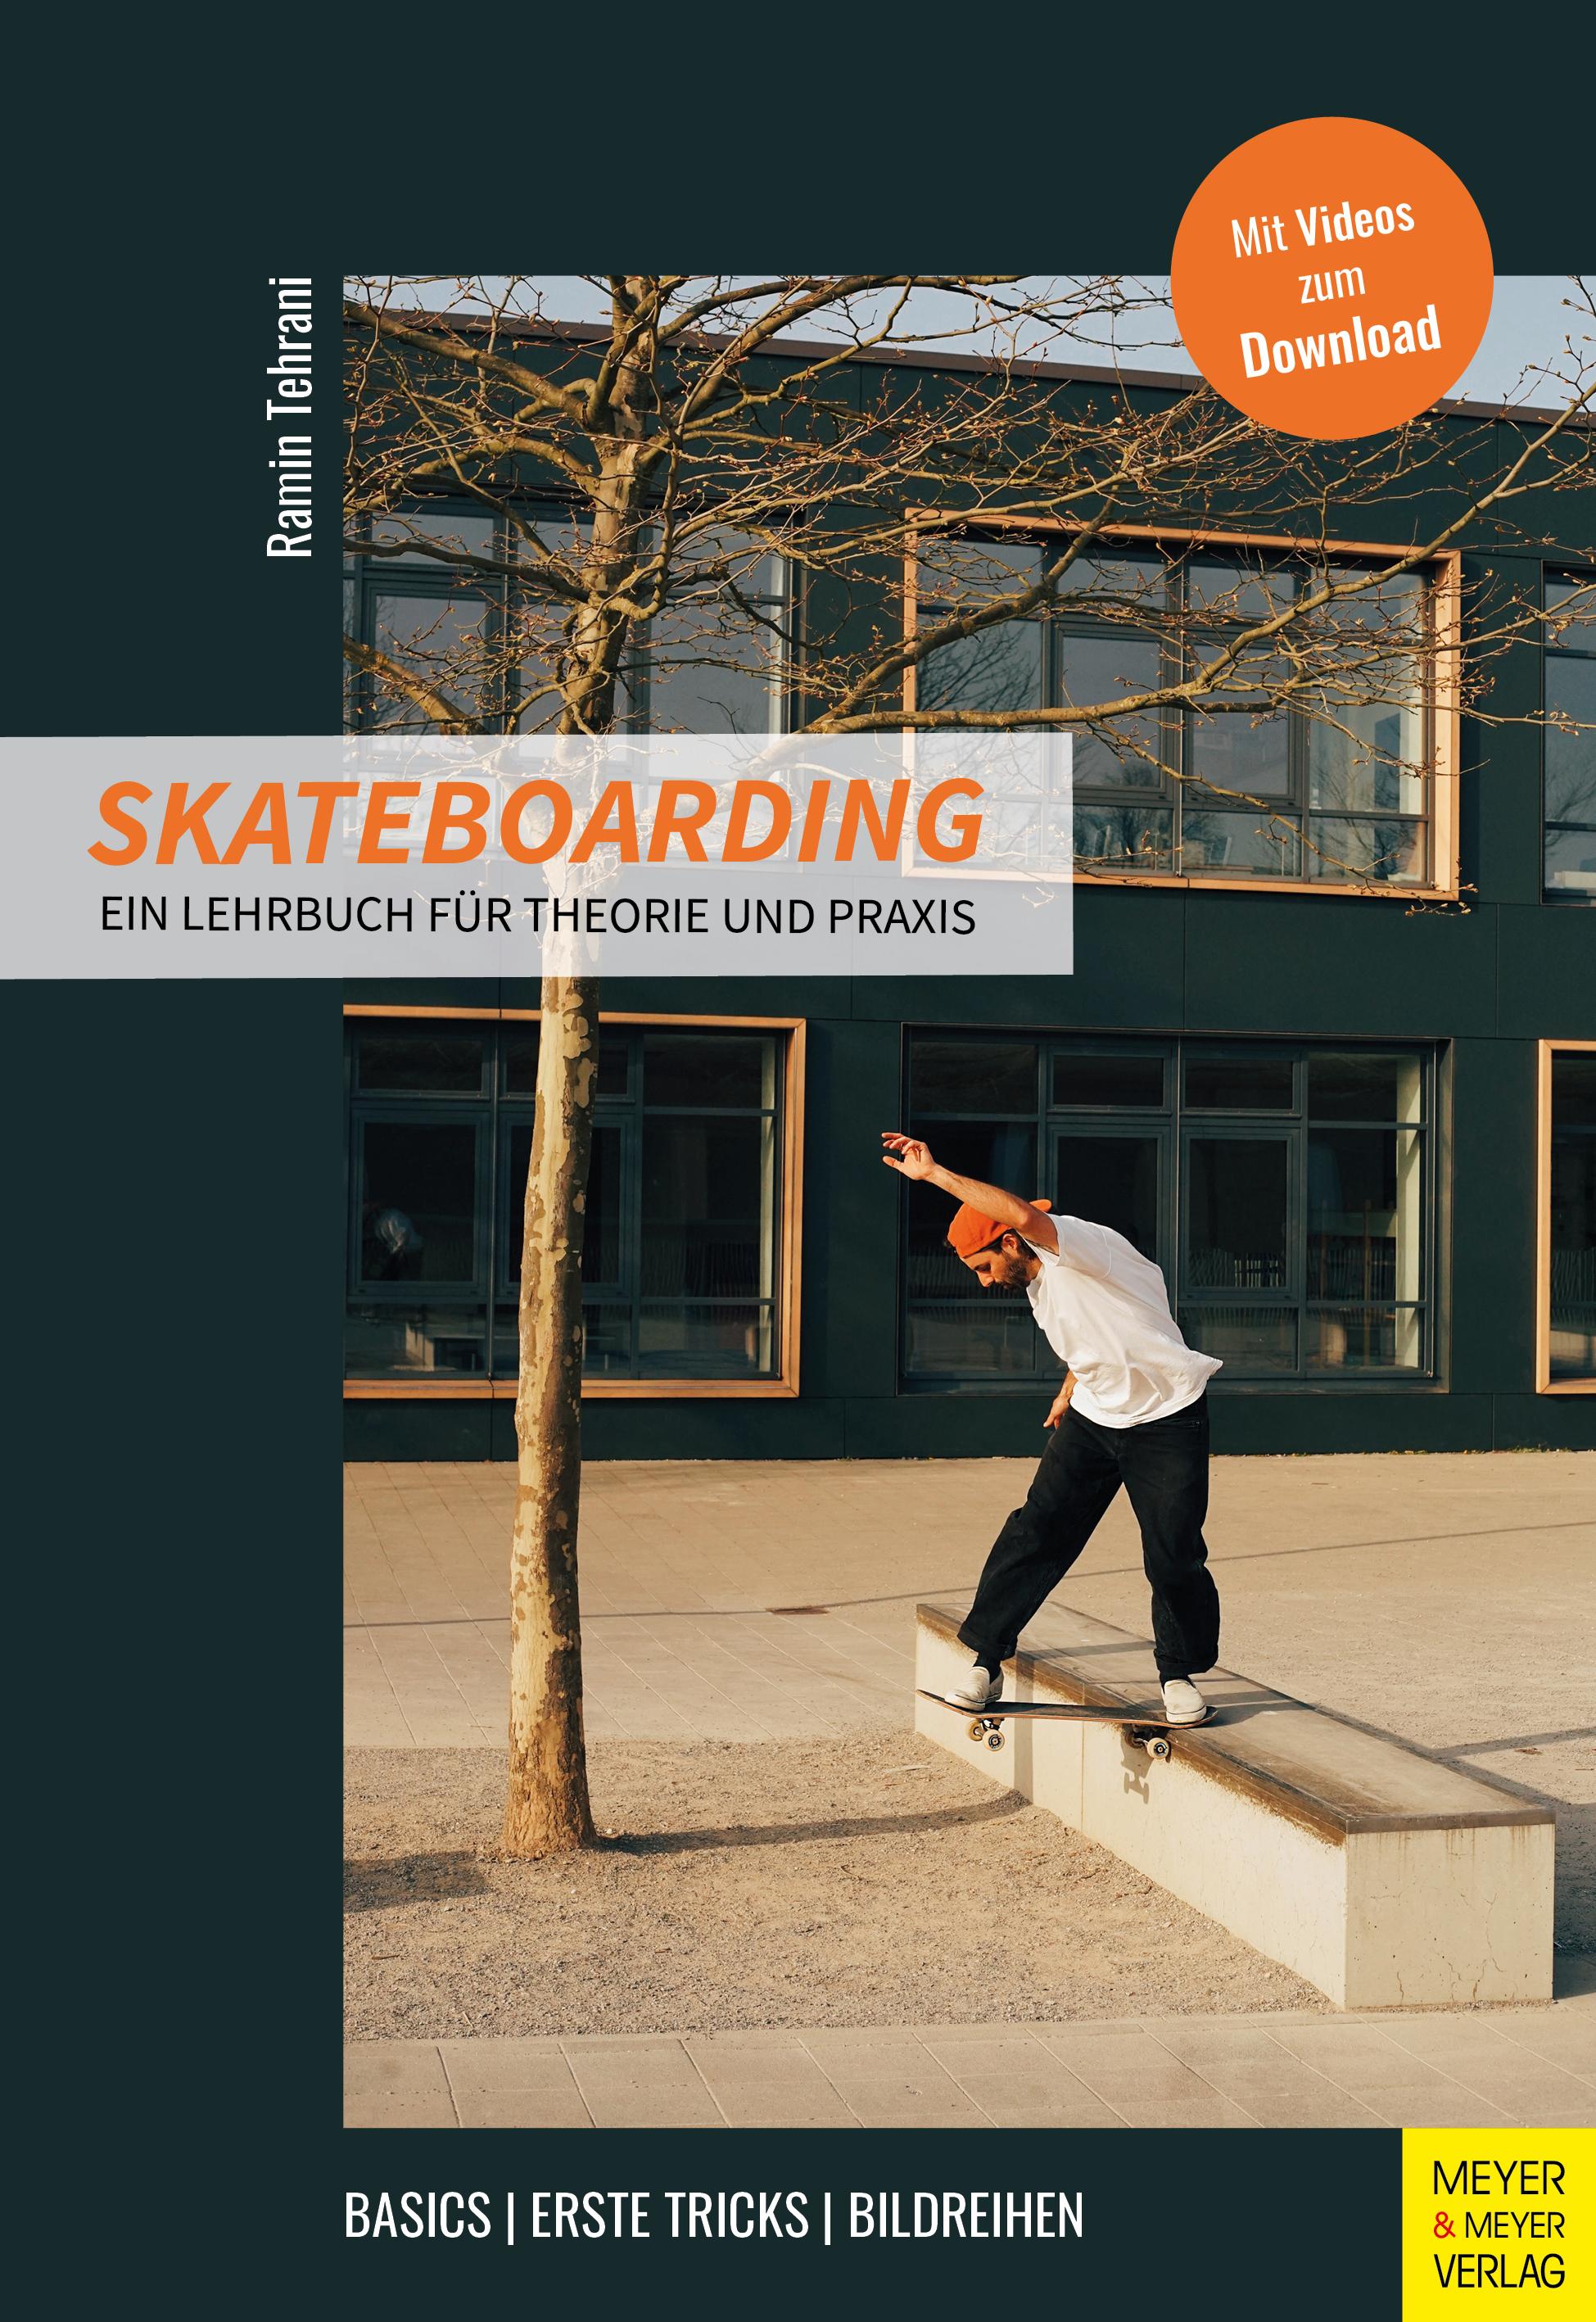 Skateboarding Ein Lehrbuch für Theorie und Praxis